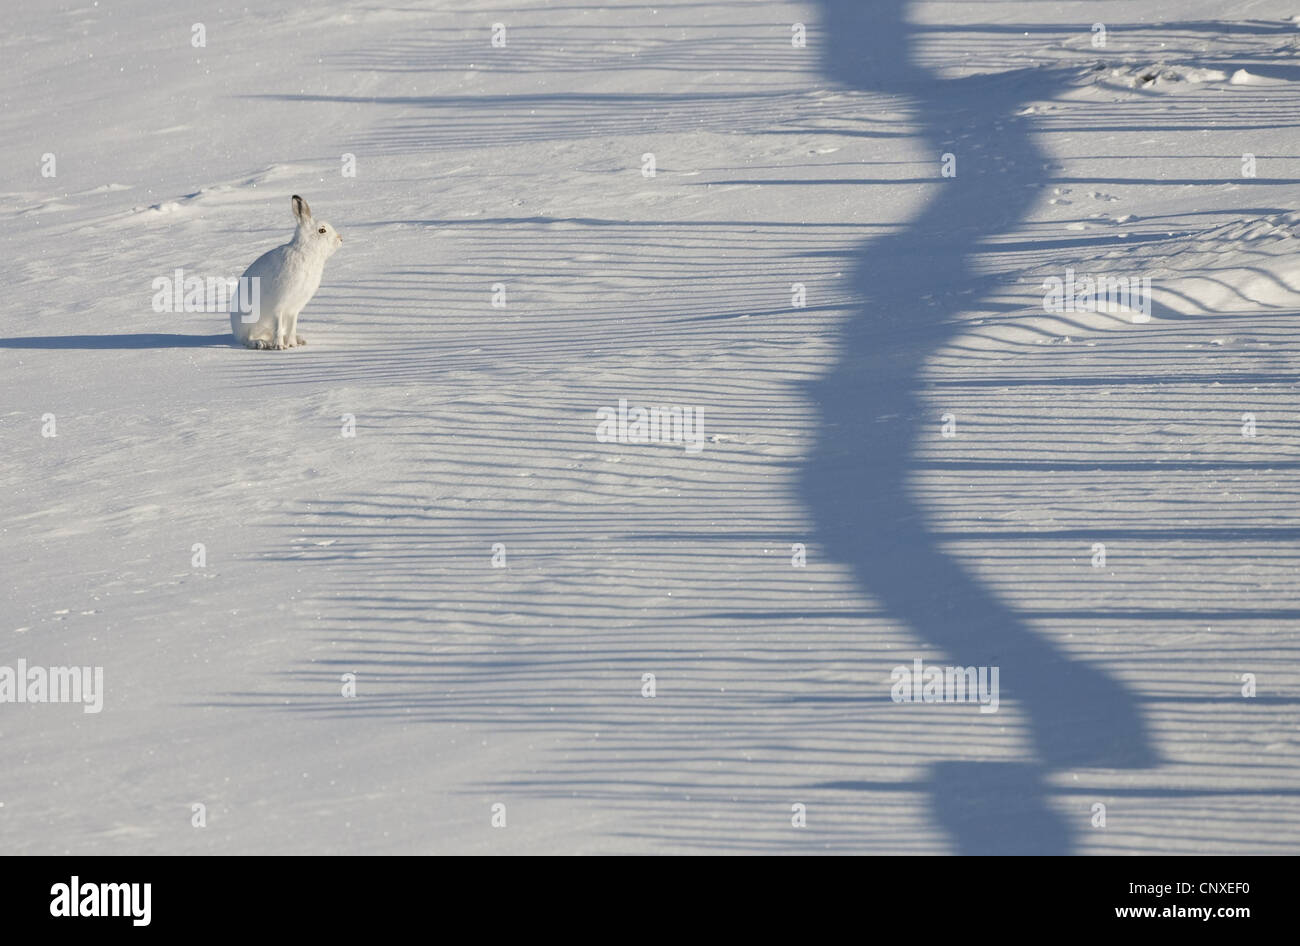 Lepre blu, la lepre bianca, white hare, Eurasian Arctic lepre (Lepus timidus), seduto nella neve con ombra di snow-recinzione, Regno Unito, Scozia, Cairngorms National Park, Deeside Foto Stock